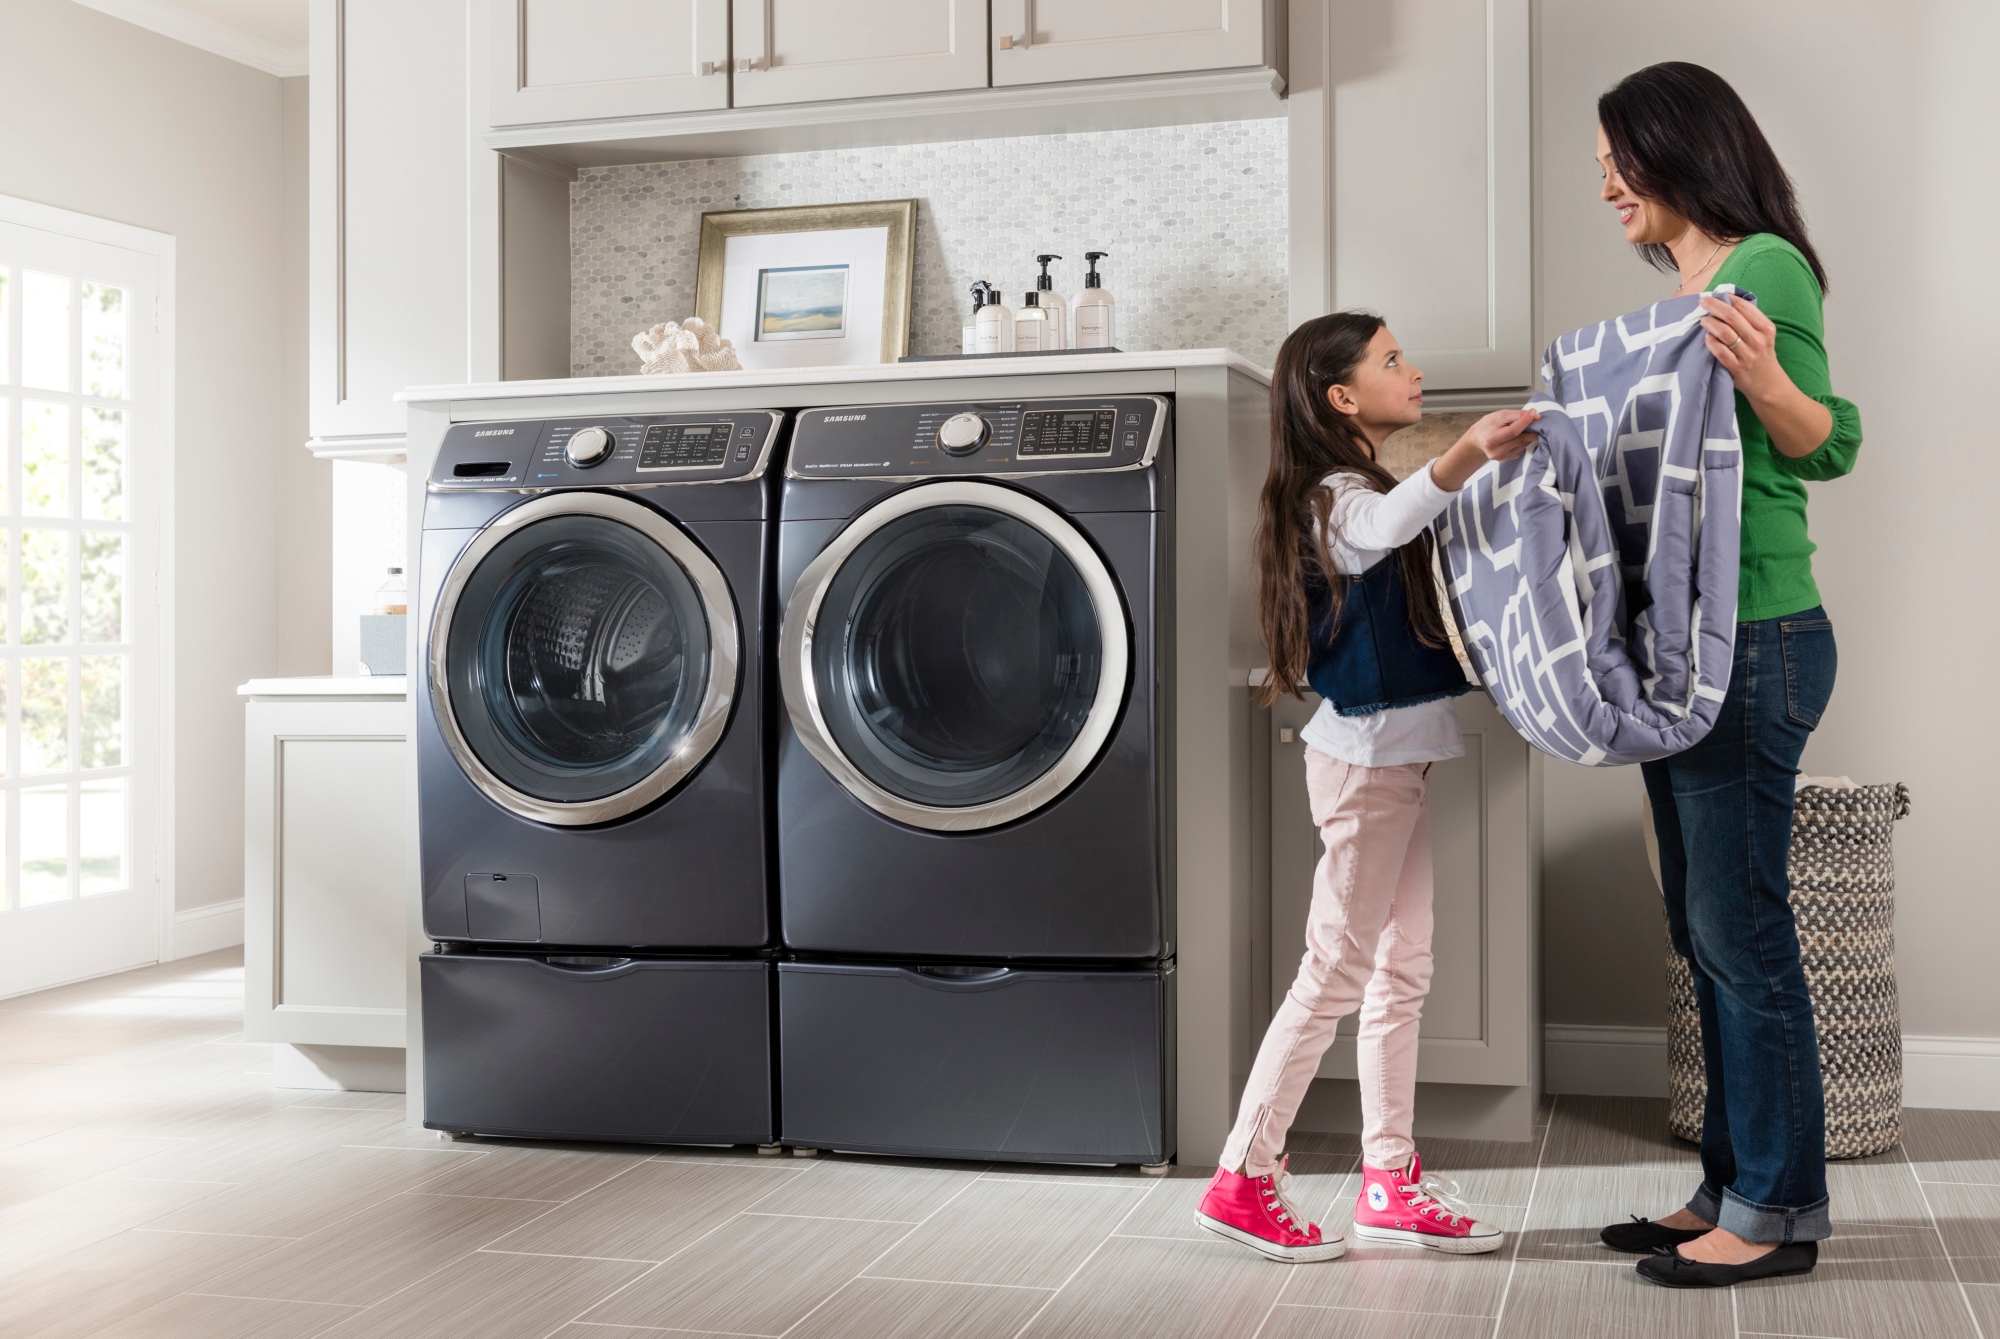  Người dùng nên chọn vị trí kê, đặt máy giặt phù hợp để tránh tình trạng máy giặt kêu to khi vắt